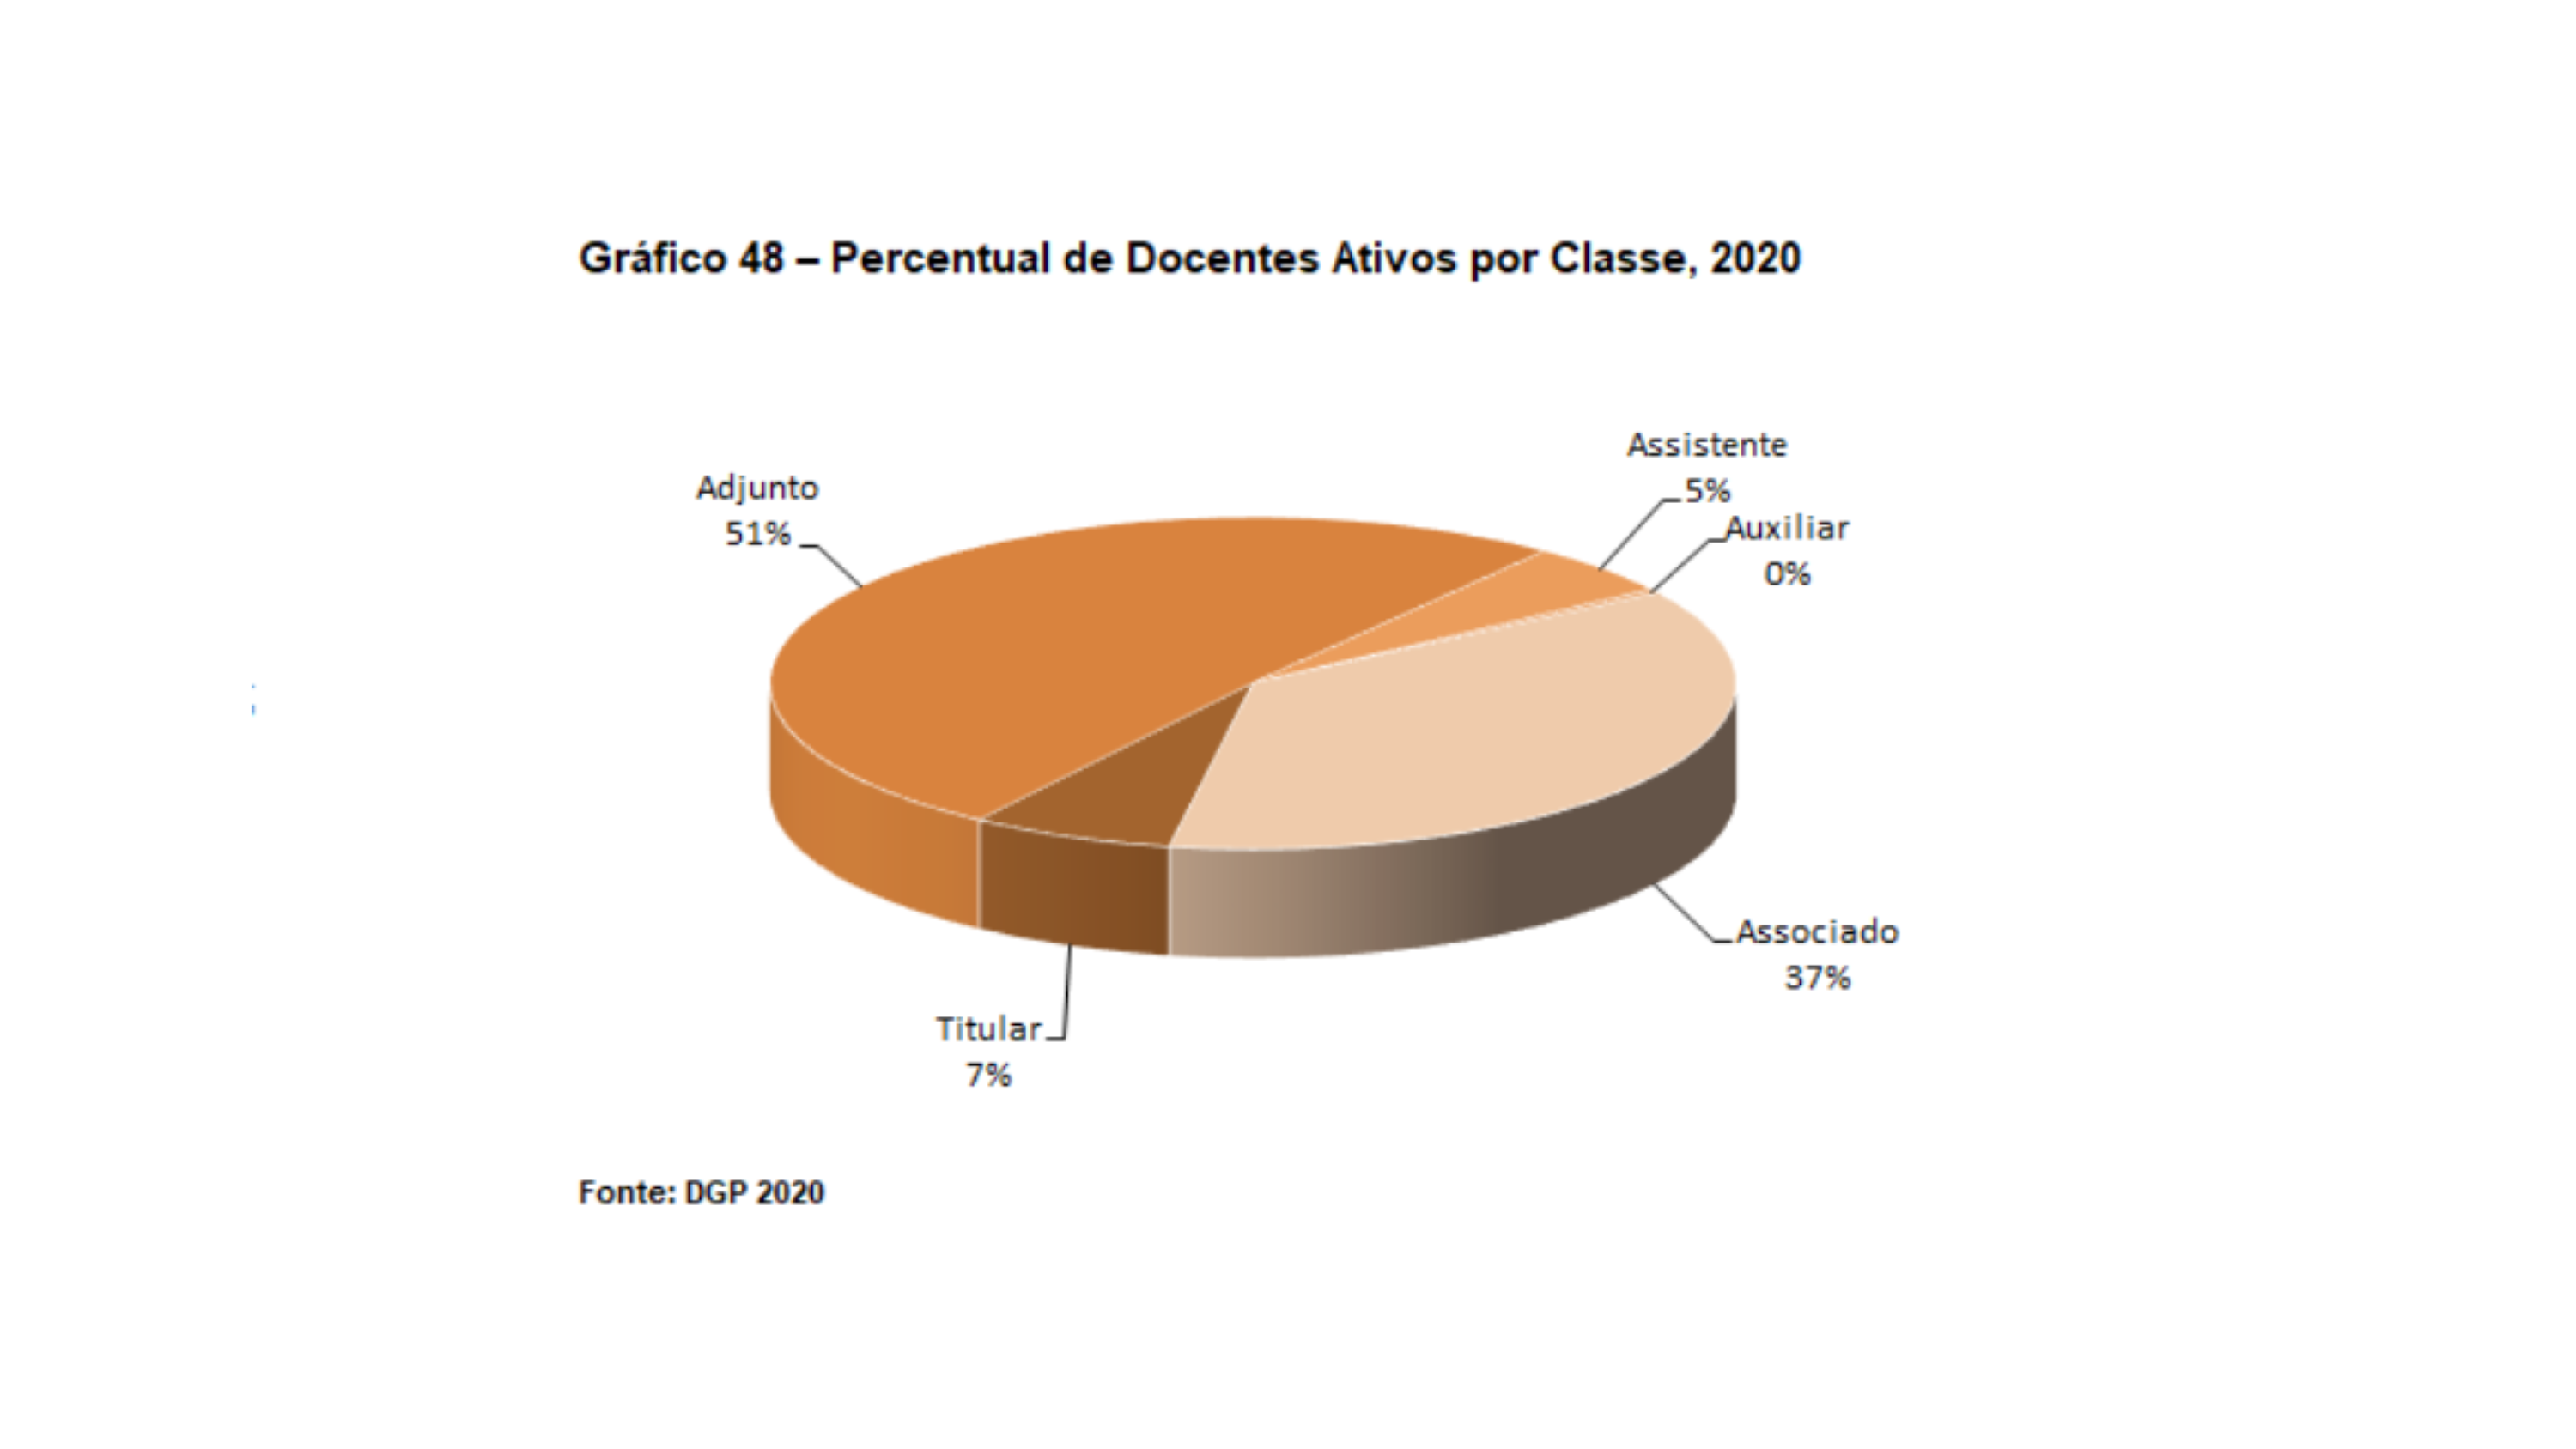 Percentual de docentes ativos por classe, 2020